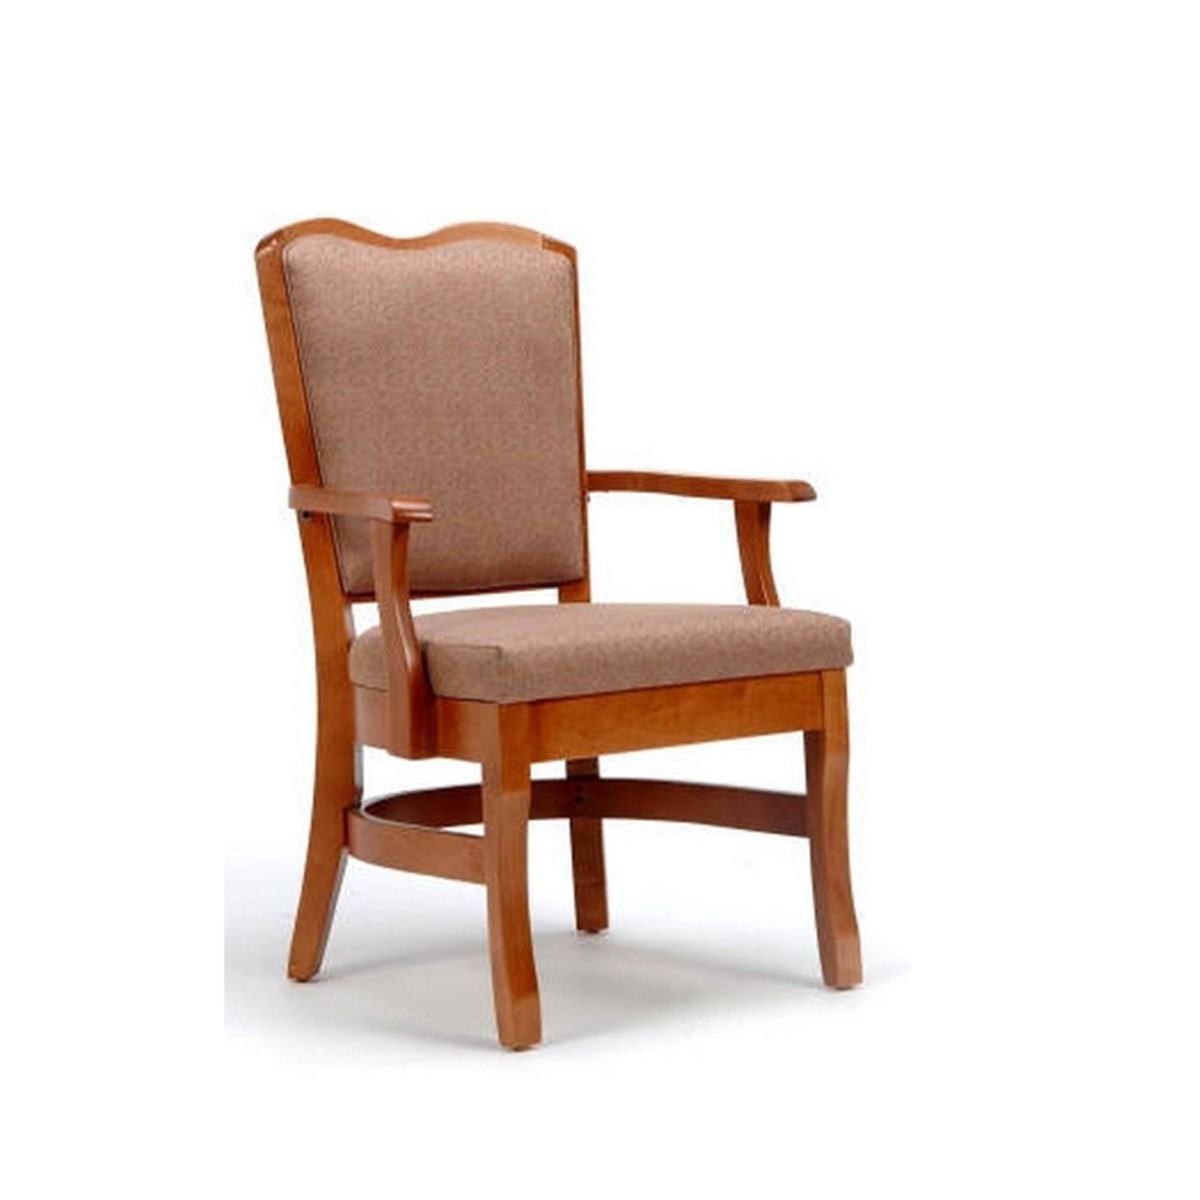 Arm Chair Model 3031A